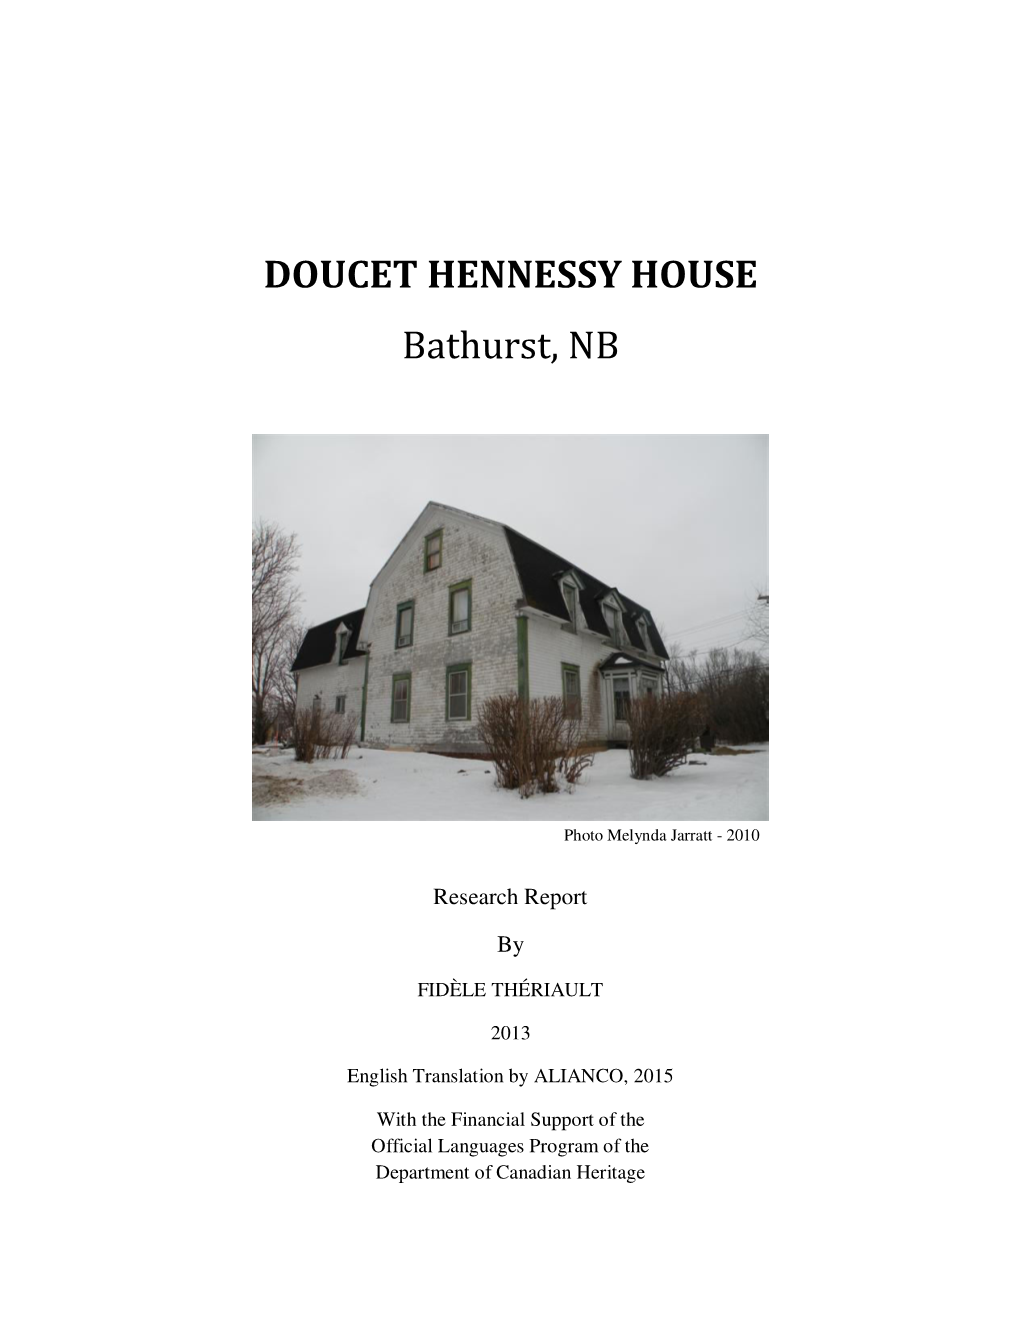 DOUCET HENNESSY HOUSE Bathurst, NB